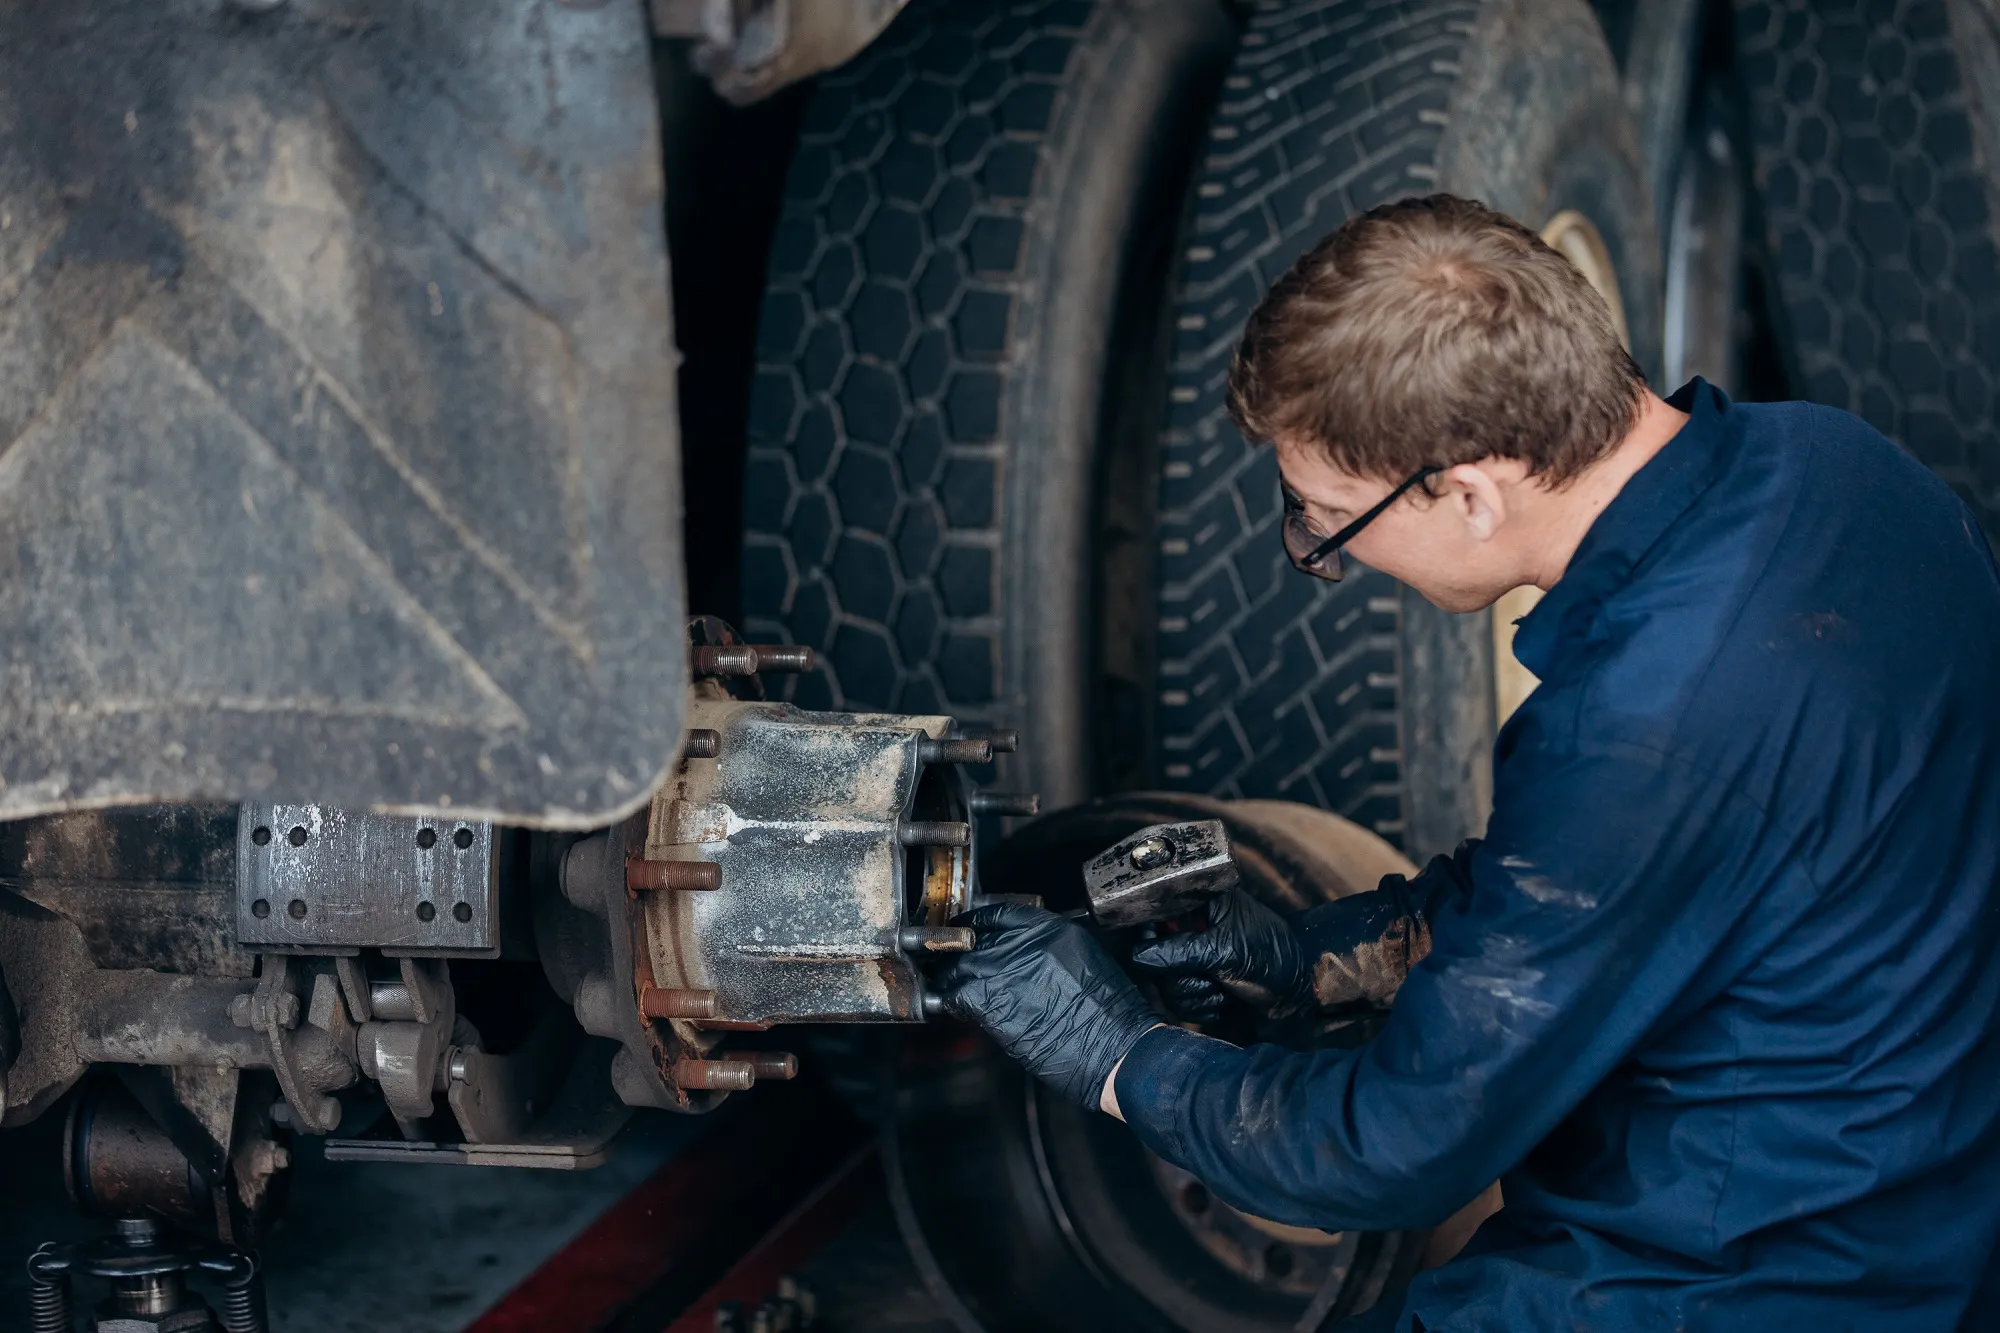 truck brake repair service